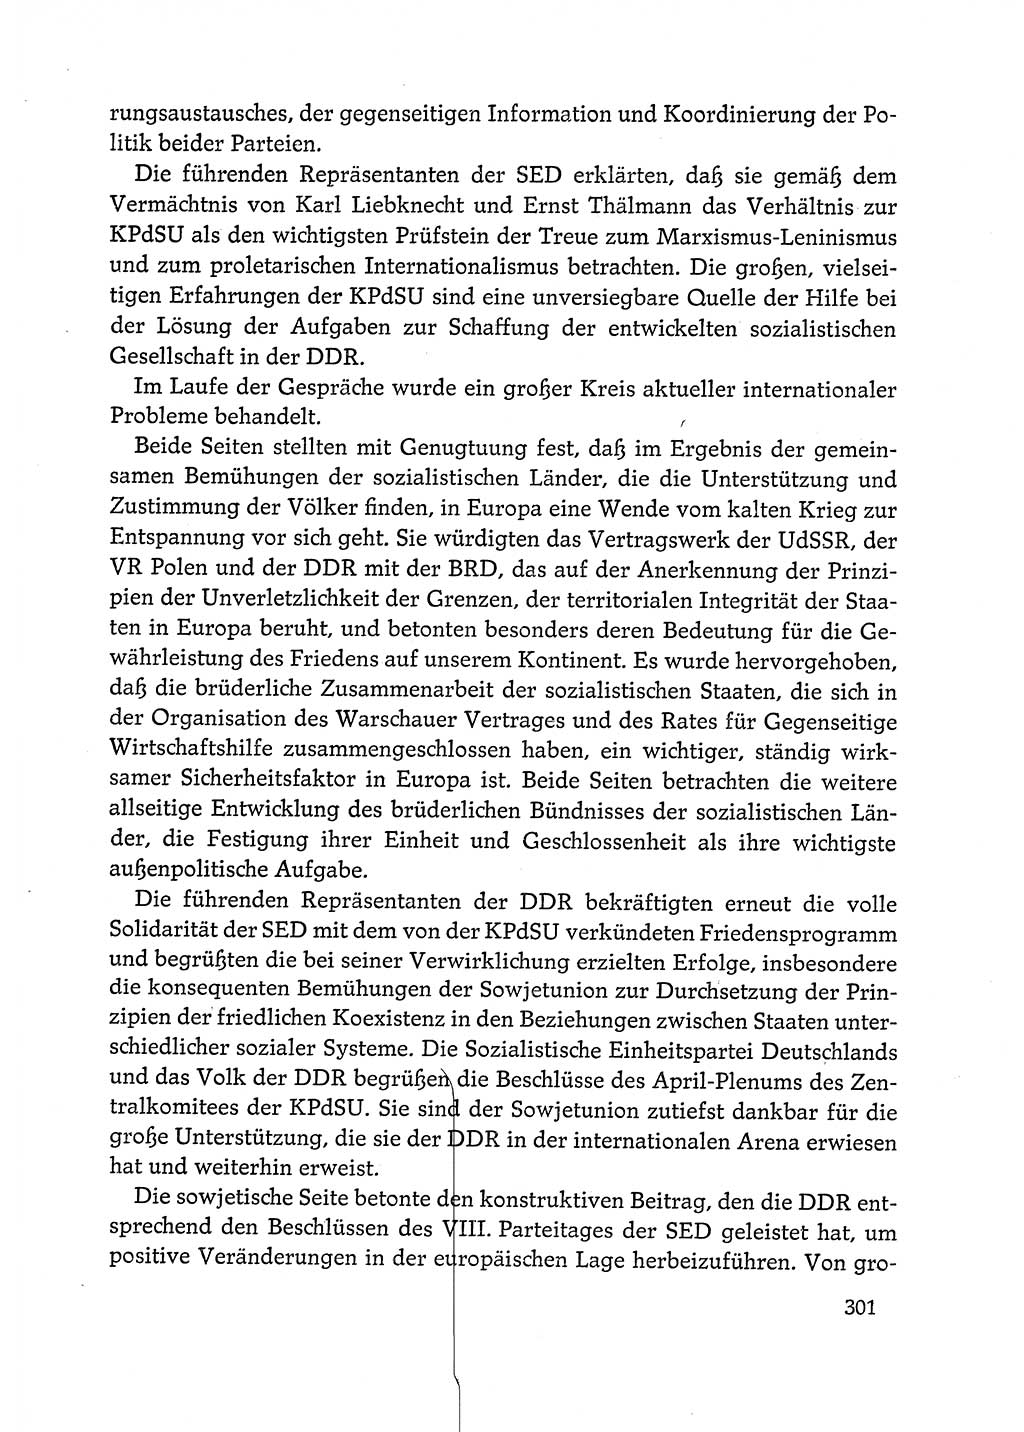 Dokumente der Sozialistischen Einheitspartei Deutschlands (SED) [Deutsche Demokratische Republik (DDR)] 1972-1973, Seite 301 (Dok. SED DDR 1972-1973, S. 301)